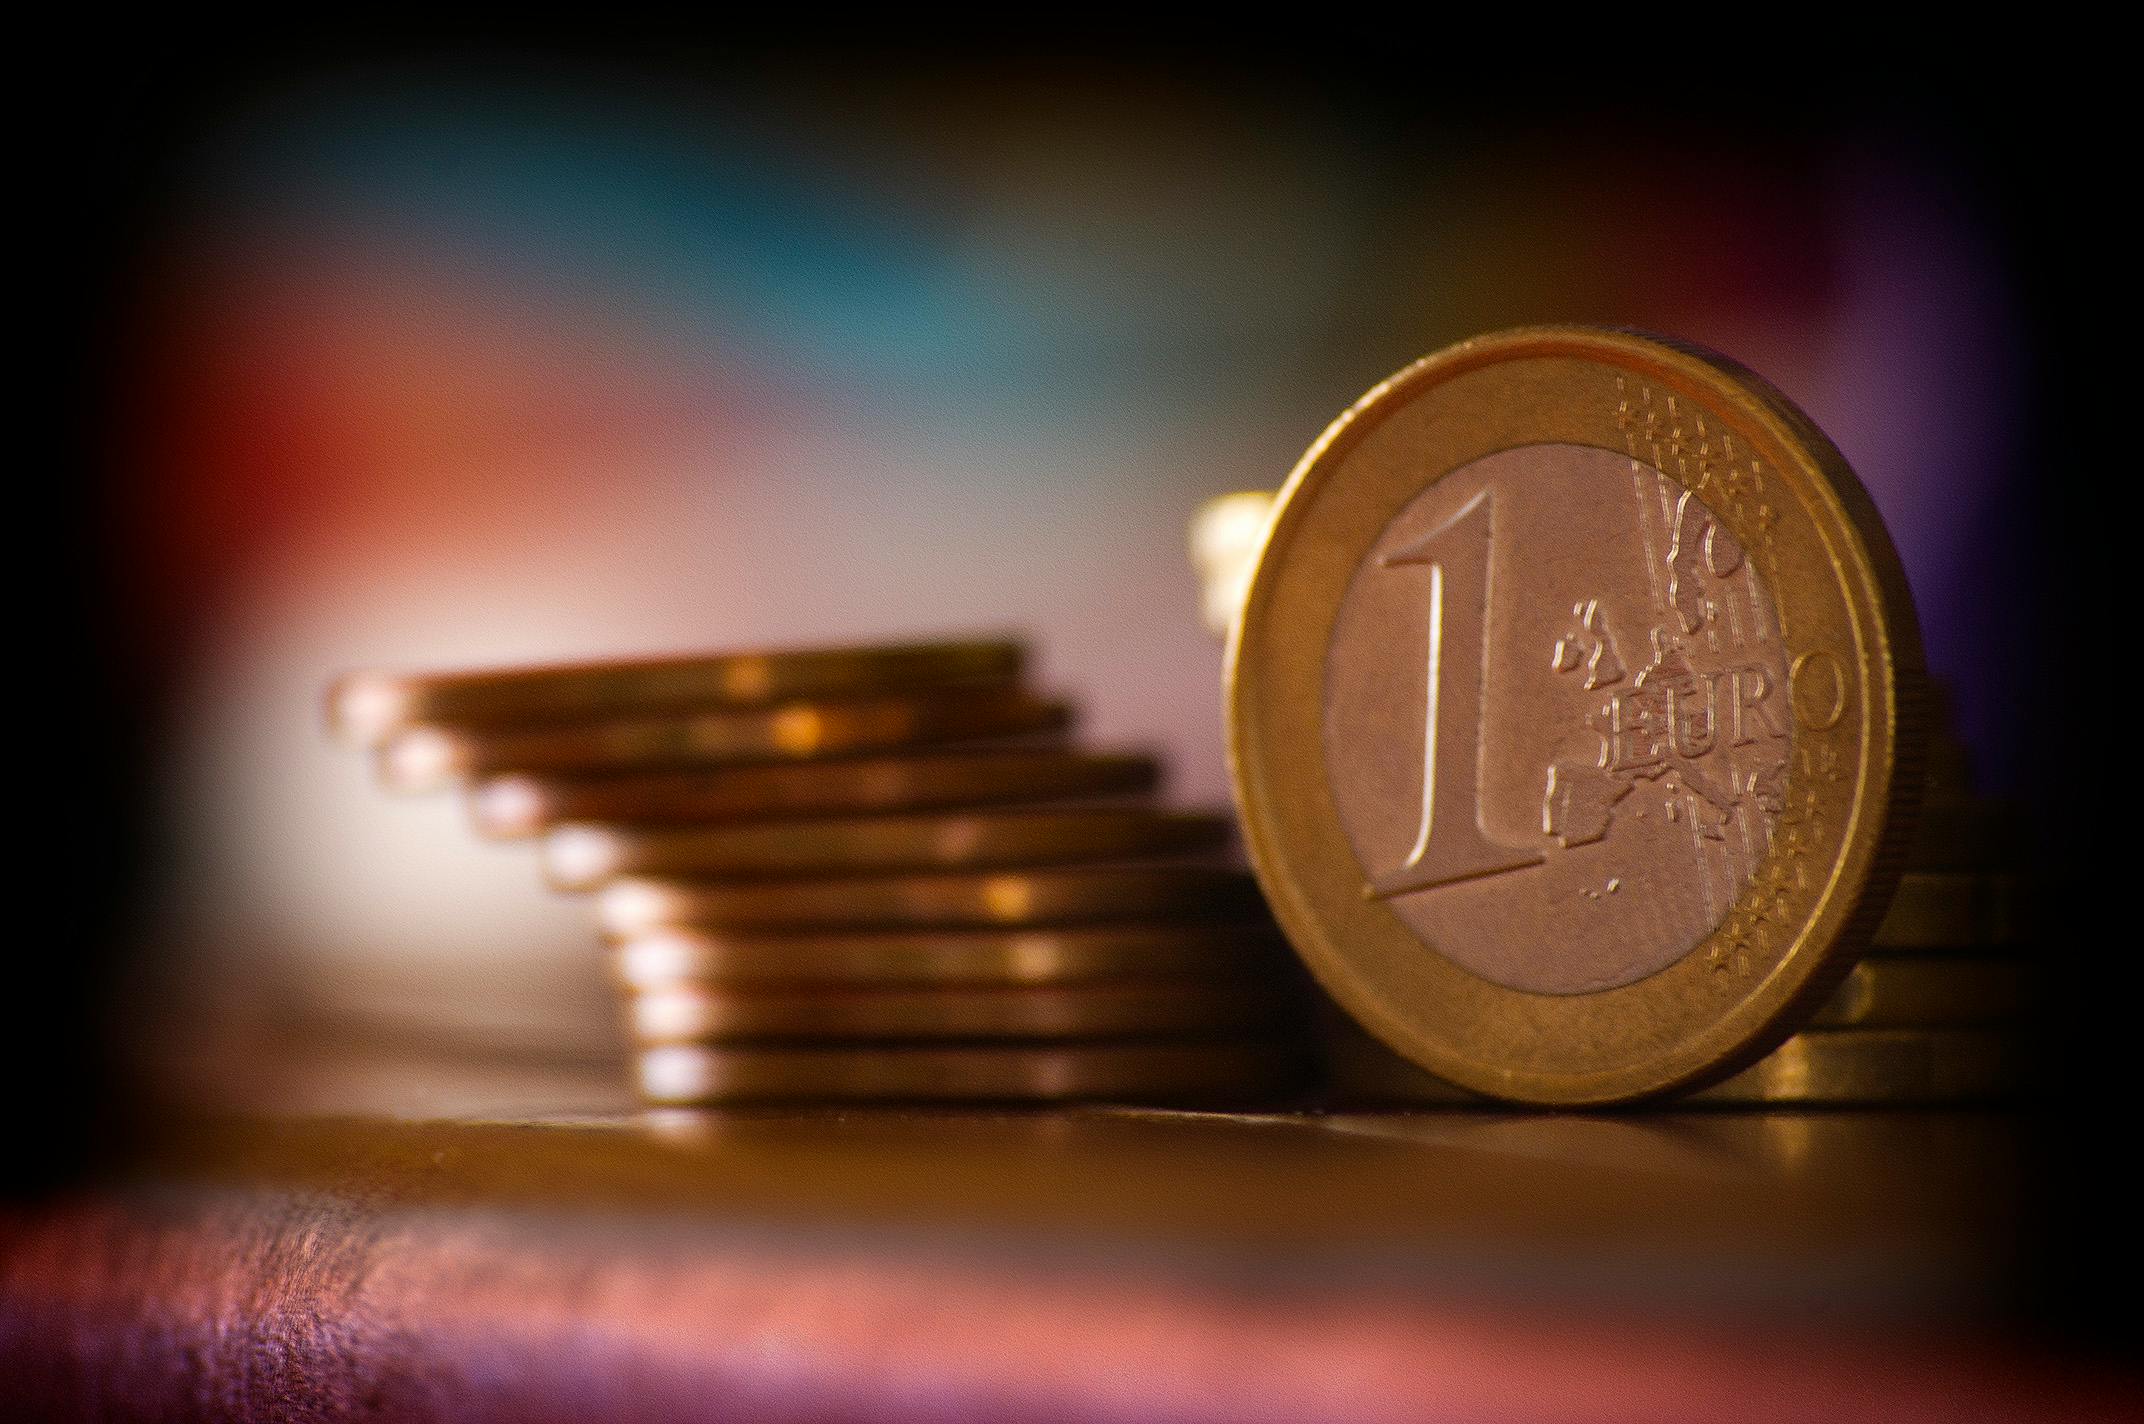 1 Euro Cent · Free Stock Photo